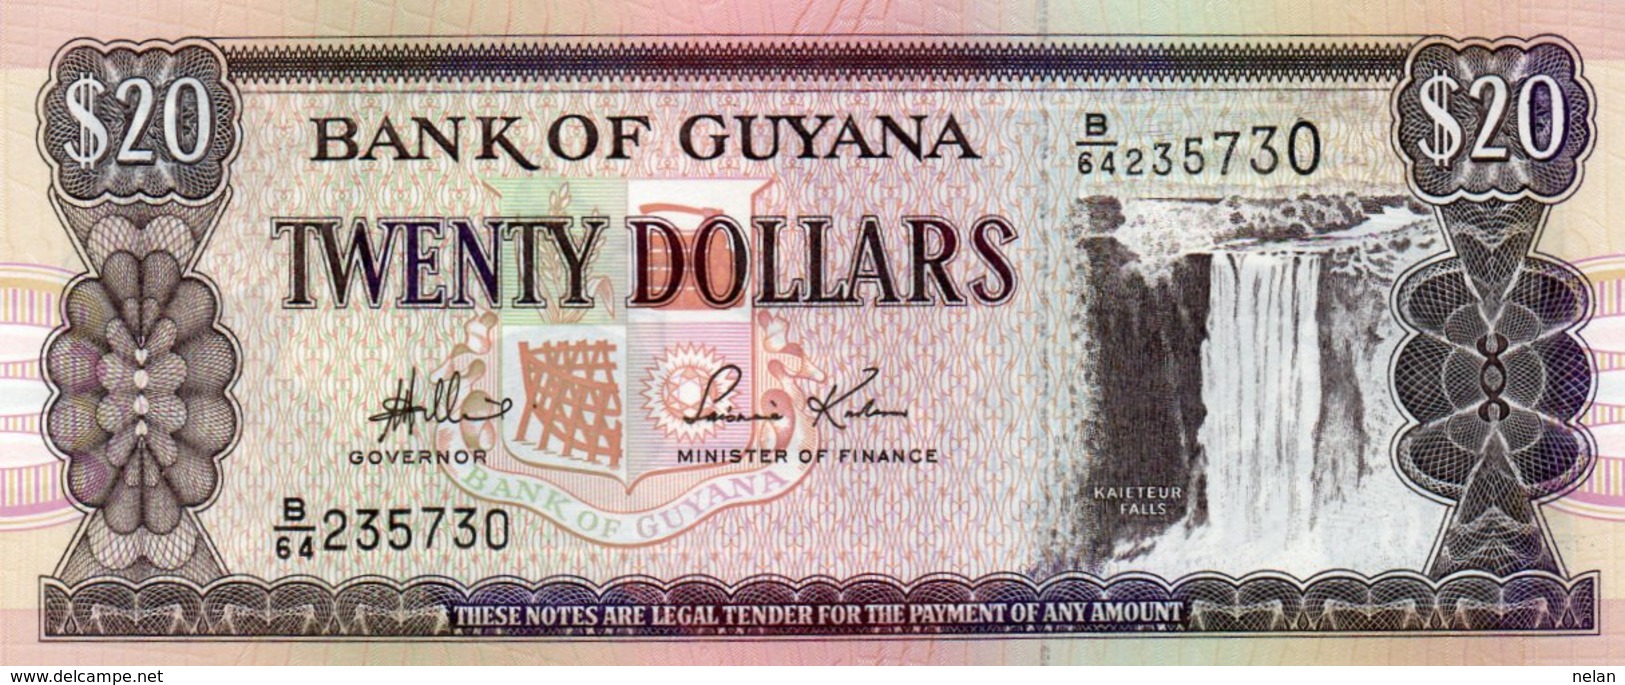 GUYANA 20 DOLLARS 2006  P-30  UNC - Guyana